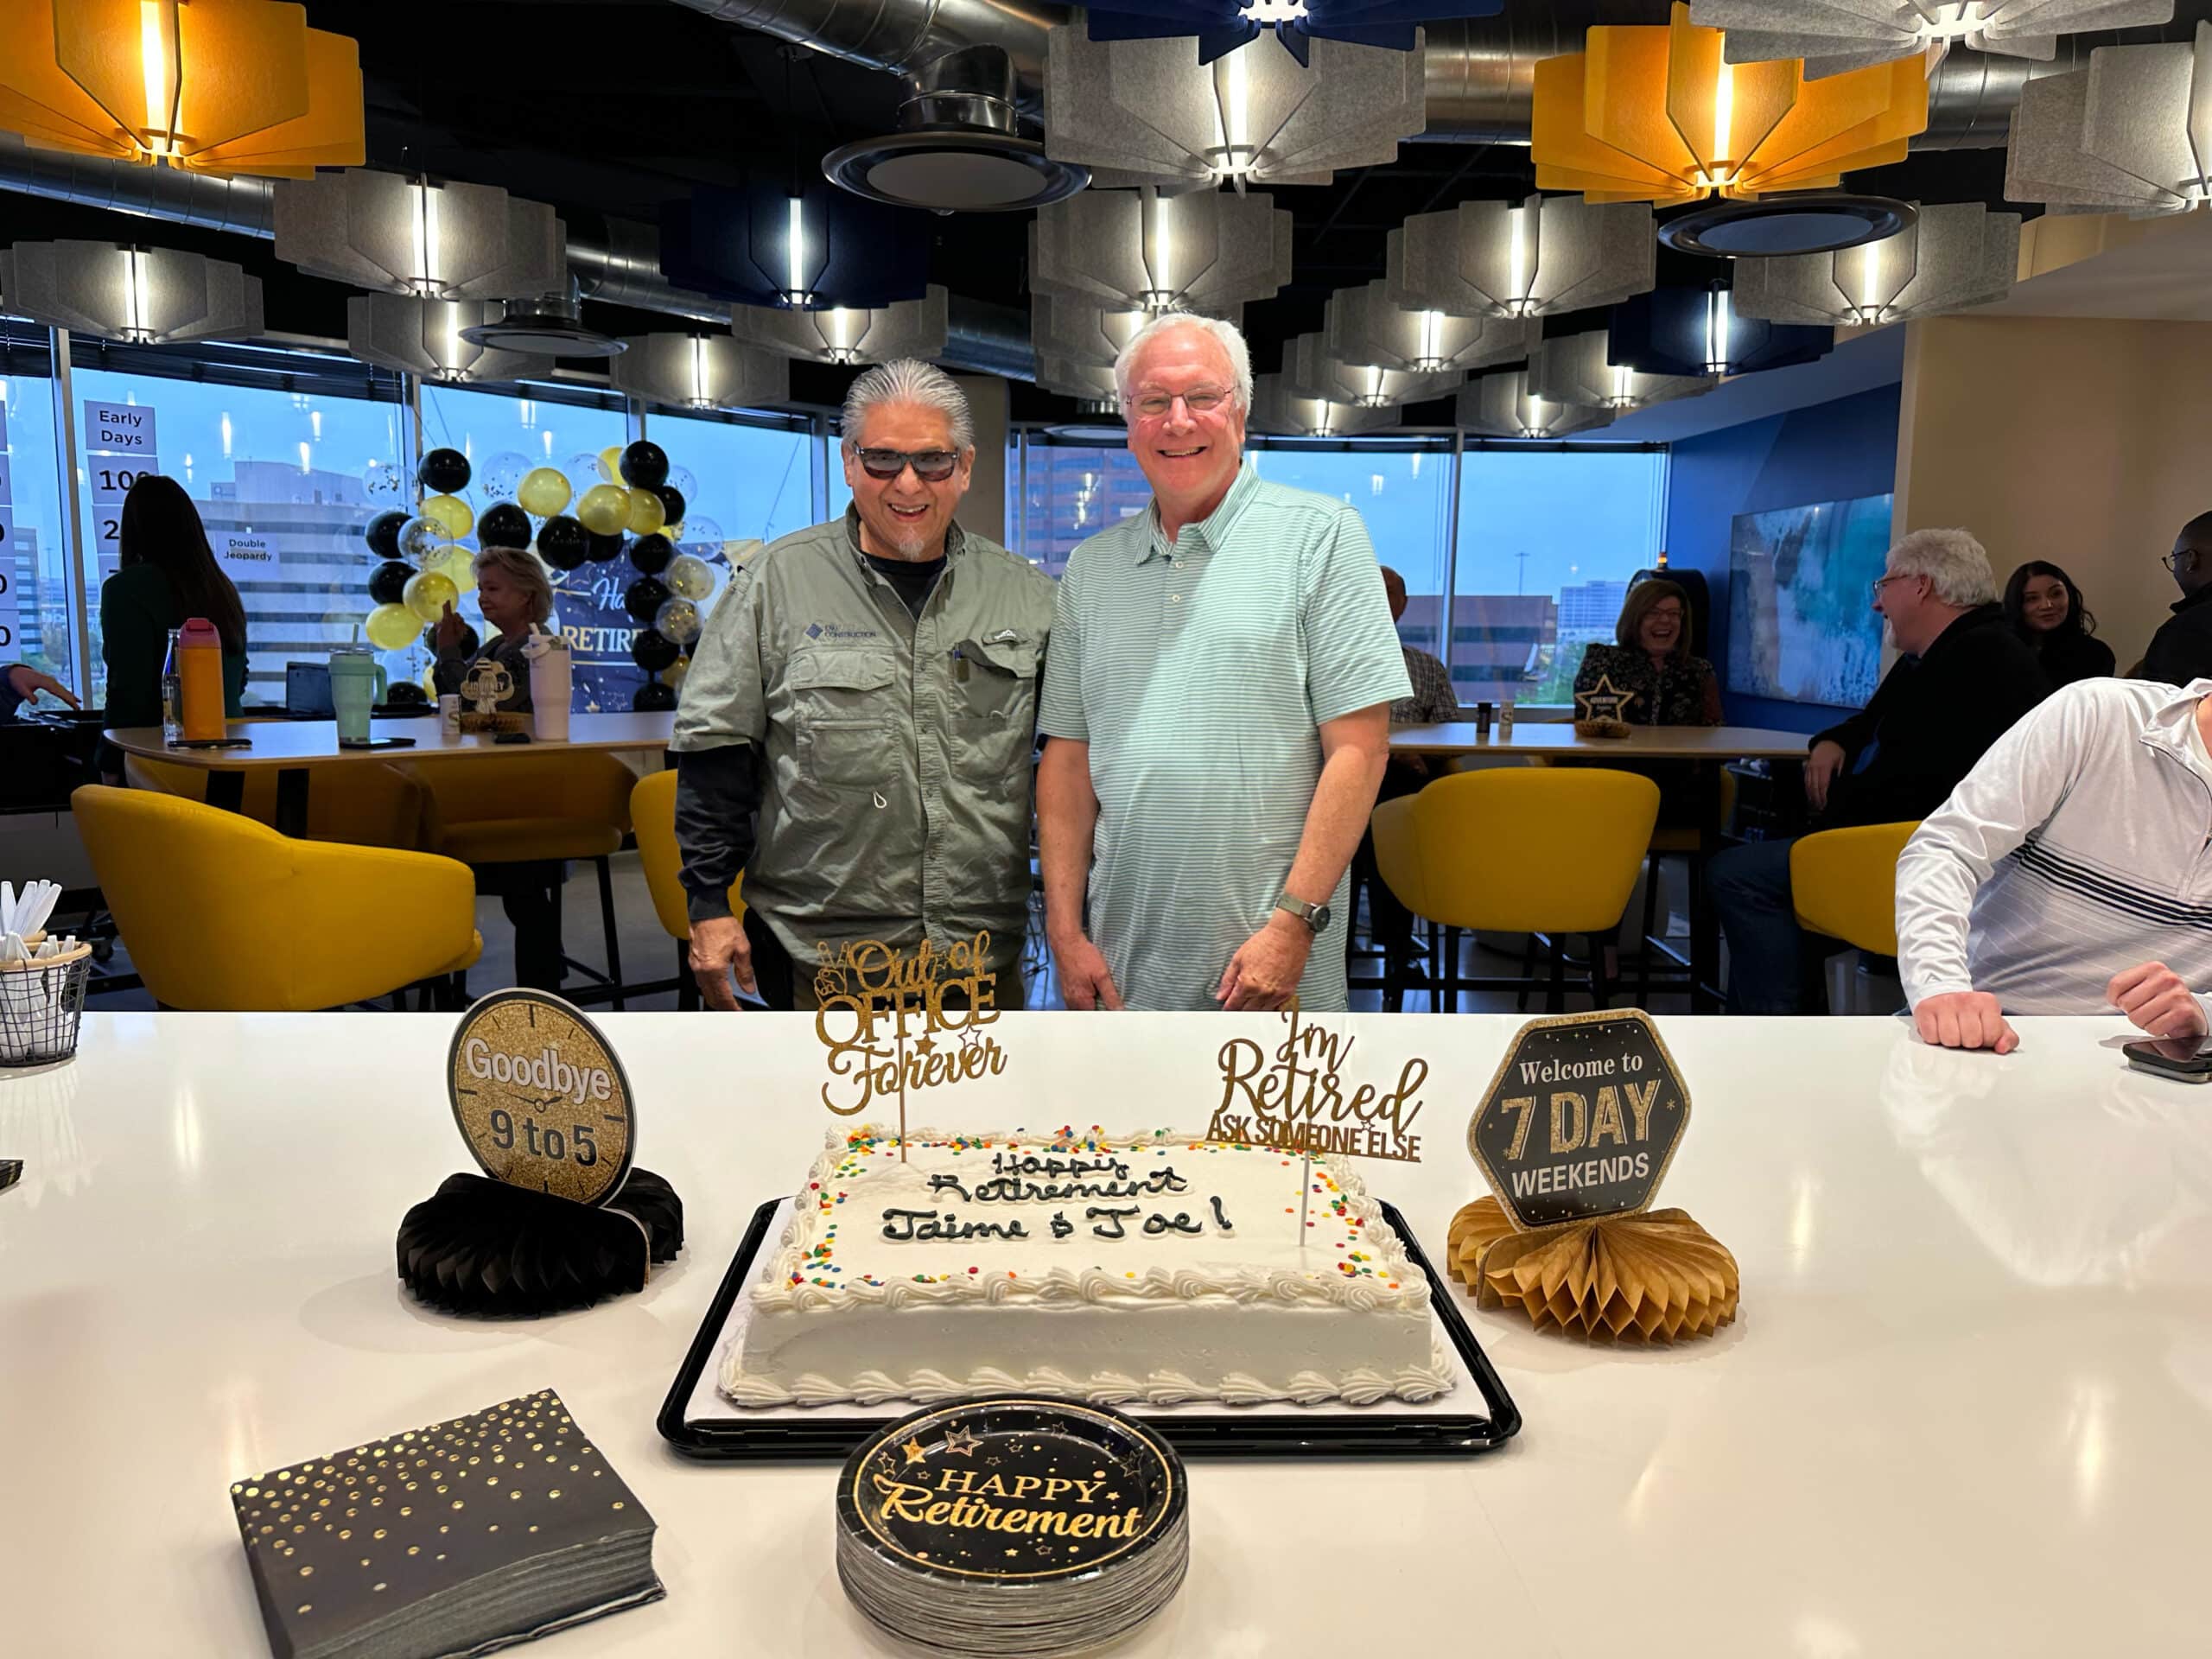 EMJ Celebrates Joe Mathews and Jaime Miramontez for Over 50 Years of Service